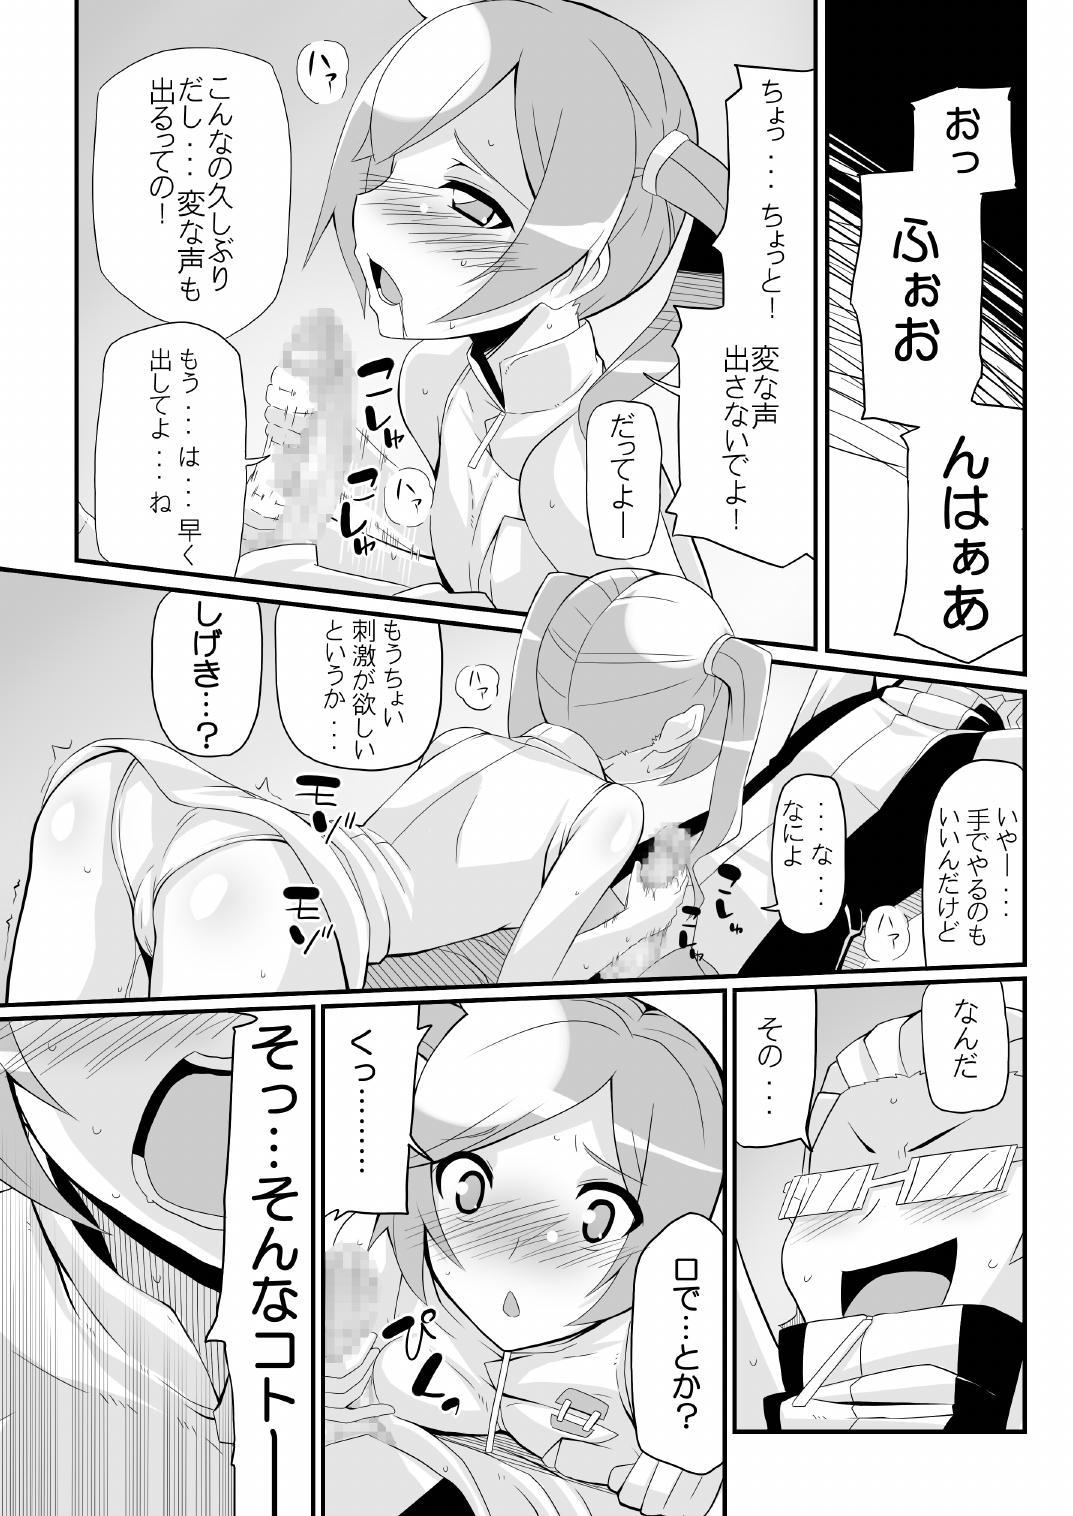 Body Massage Re:Akiho/Rinatize Ero - Digimon Blackdick - Page 7